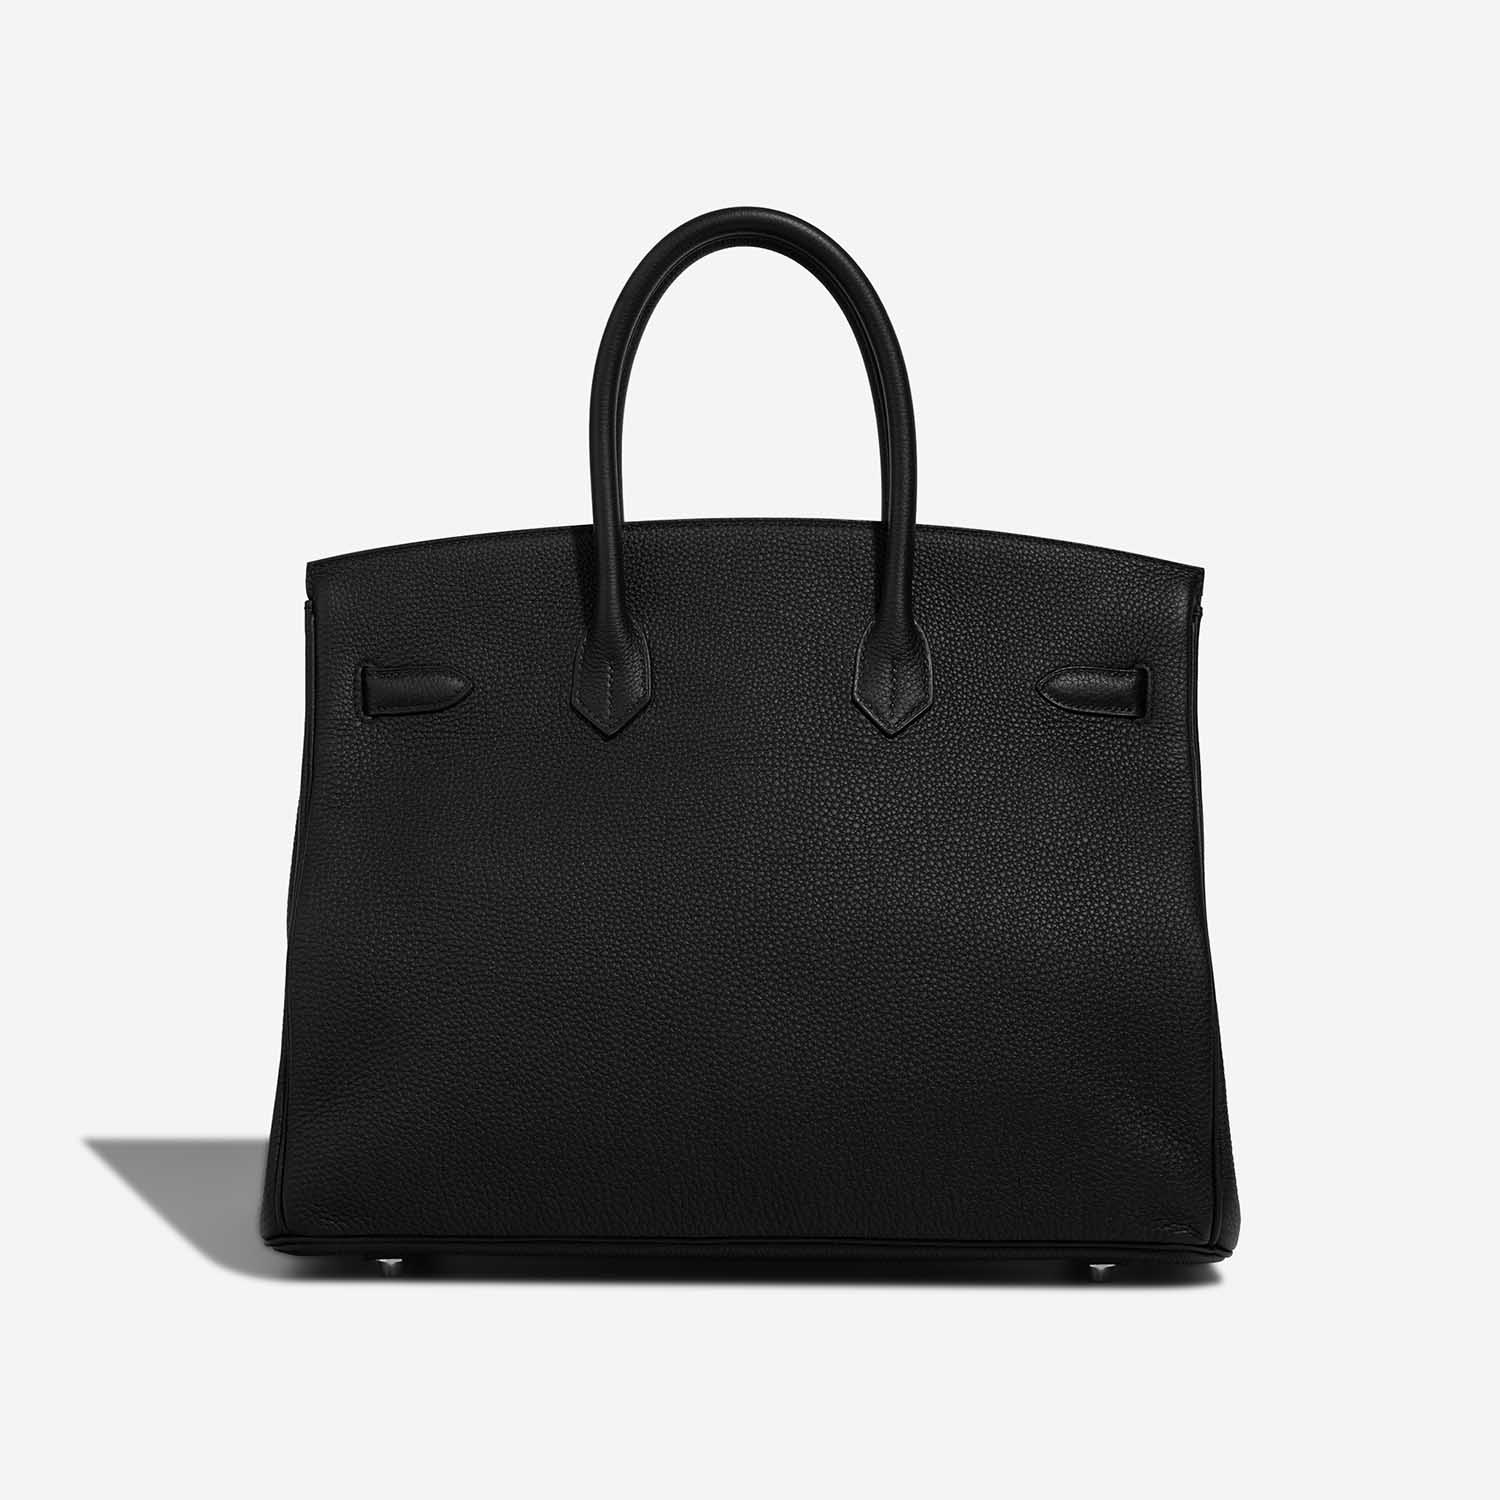 Hermès Birkin 35 Black Back | Verkaufen Sie Ihre Designertasche auf Saclab.com